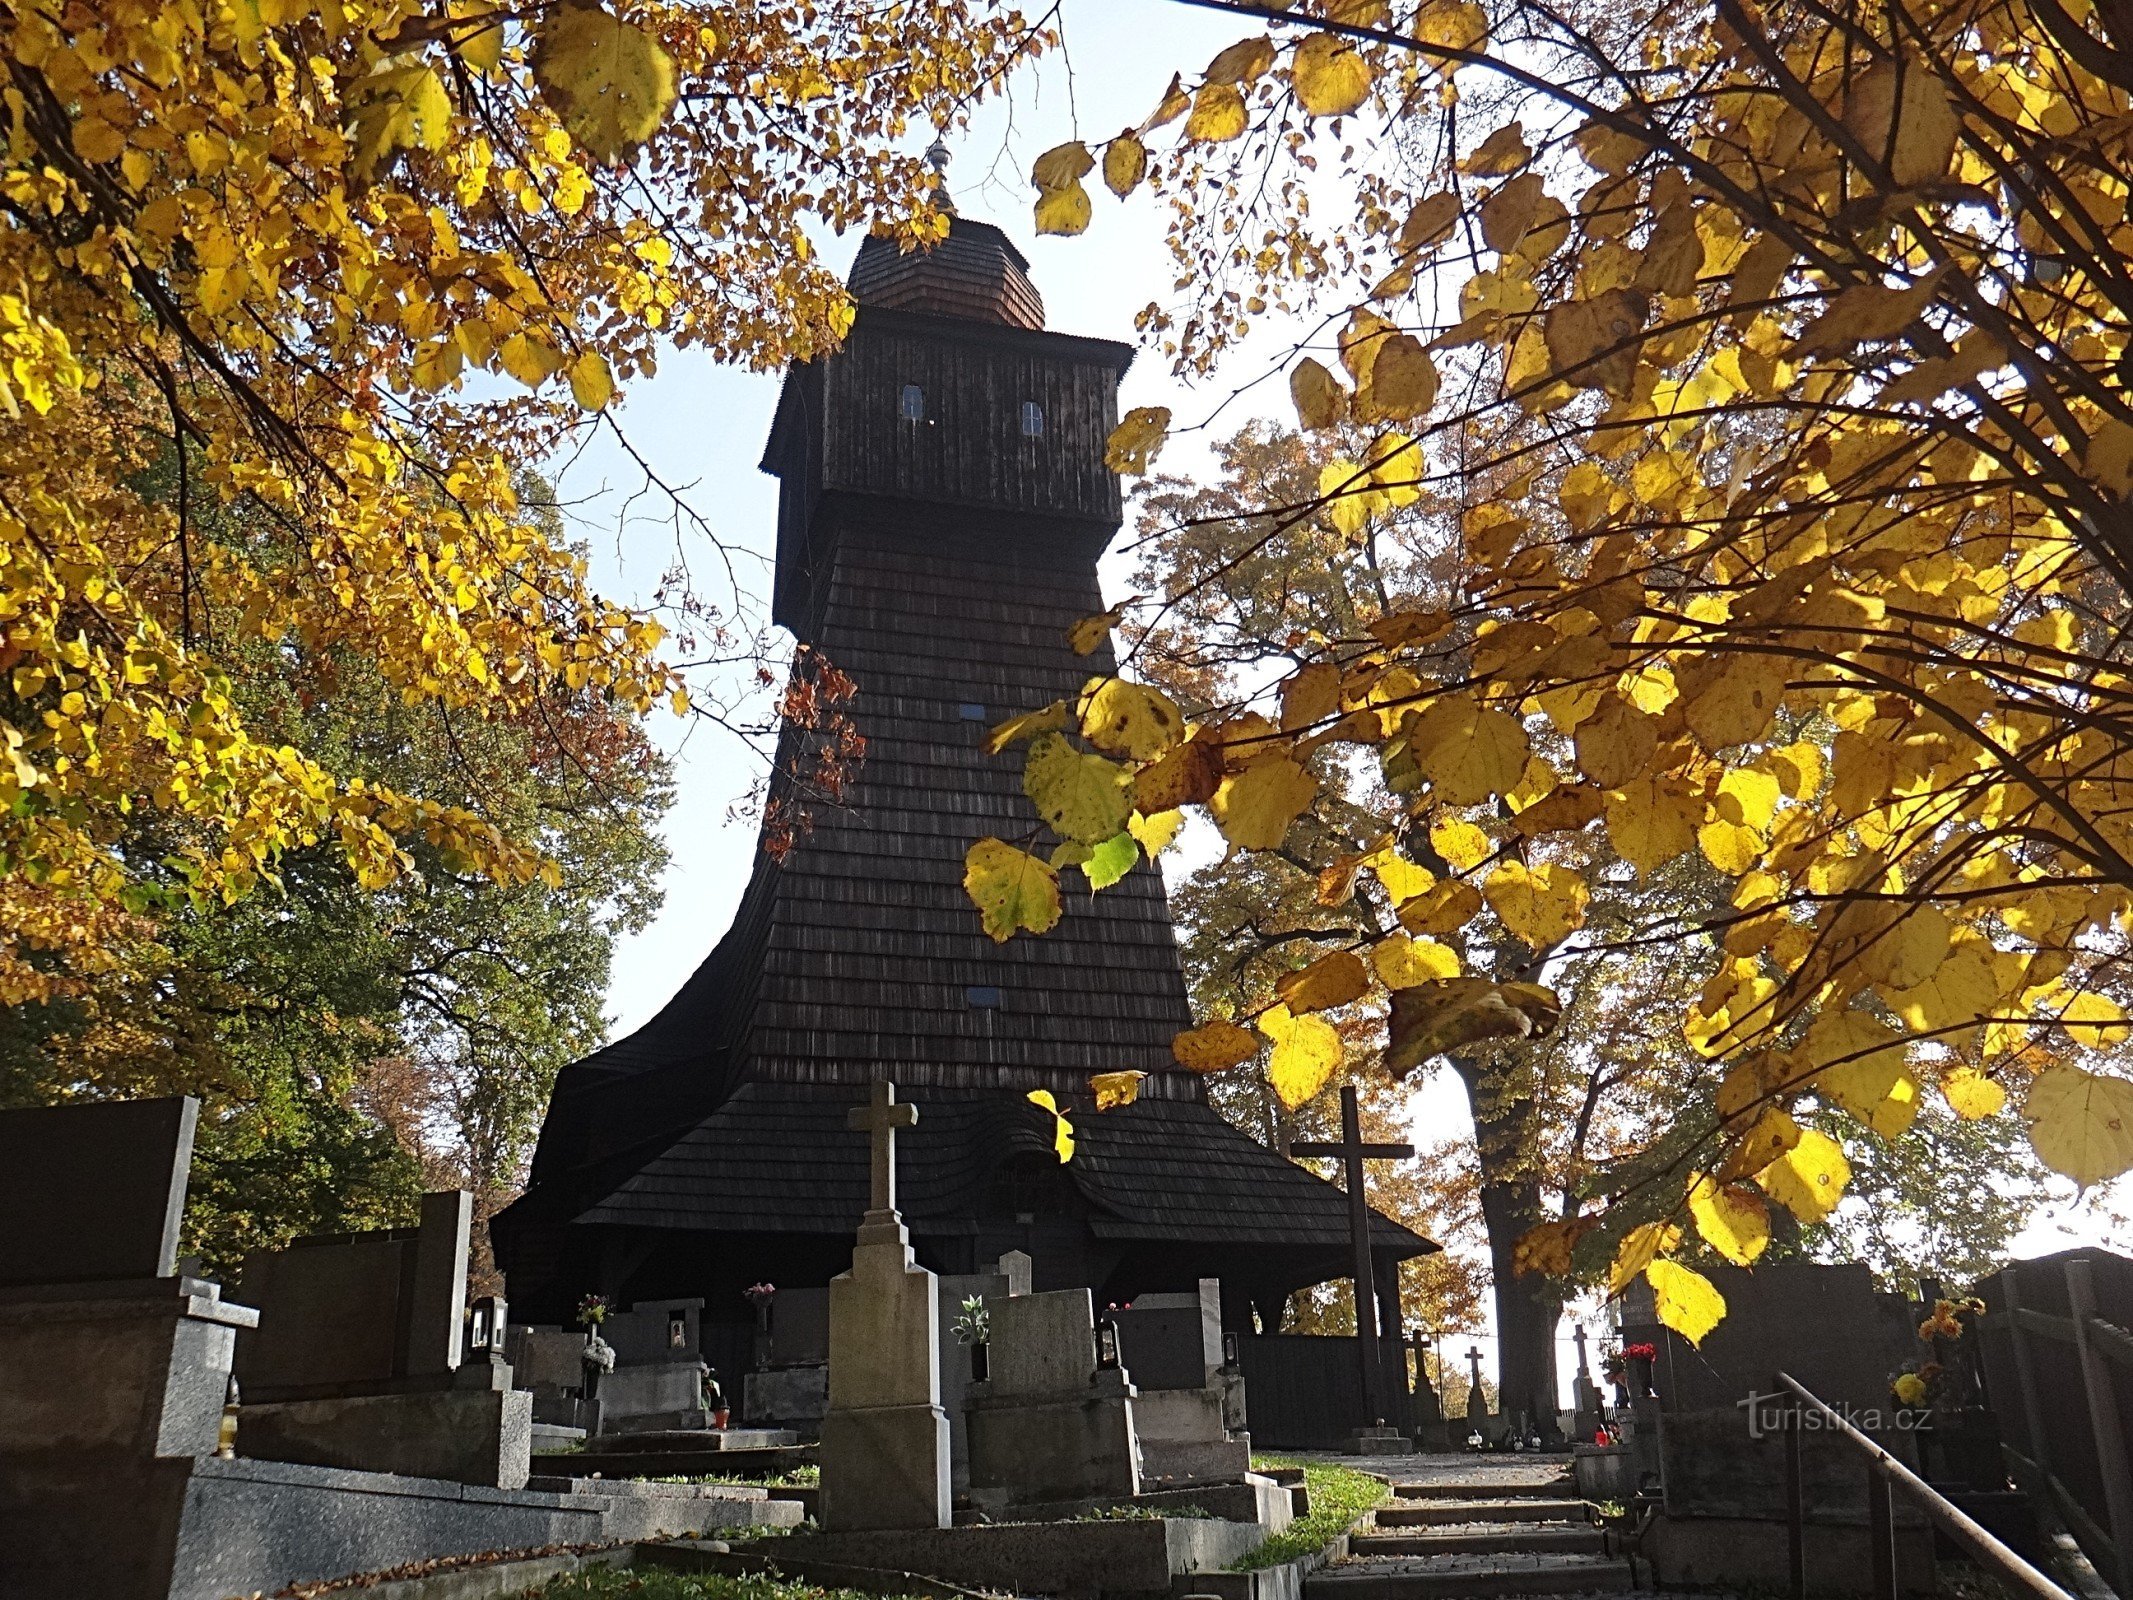 Nhà thờ gỗ Thăng thiên Dolní Marklovice